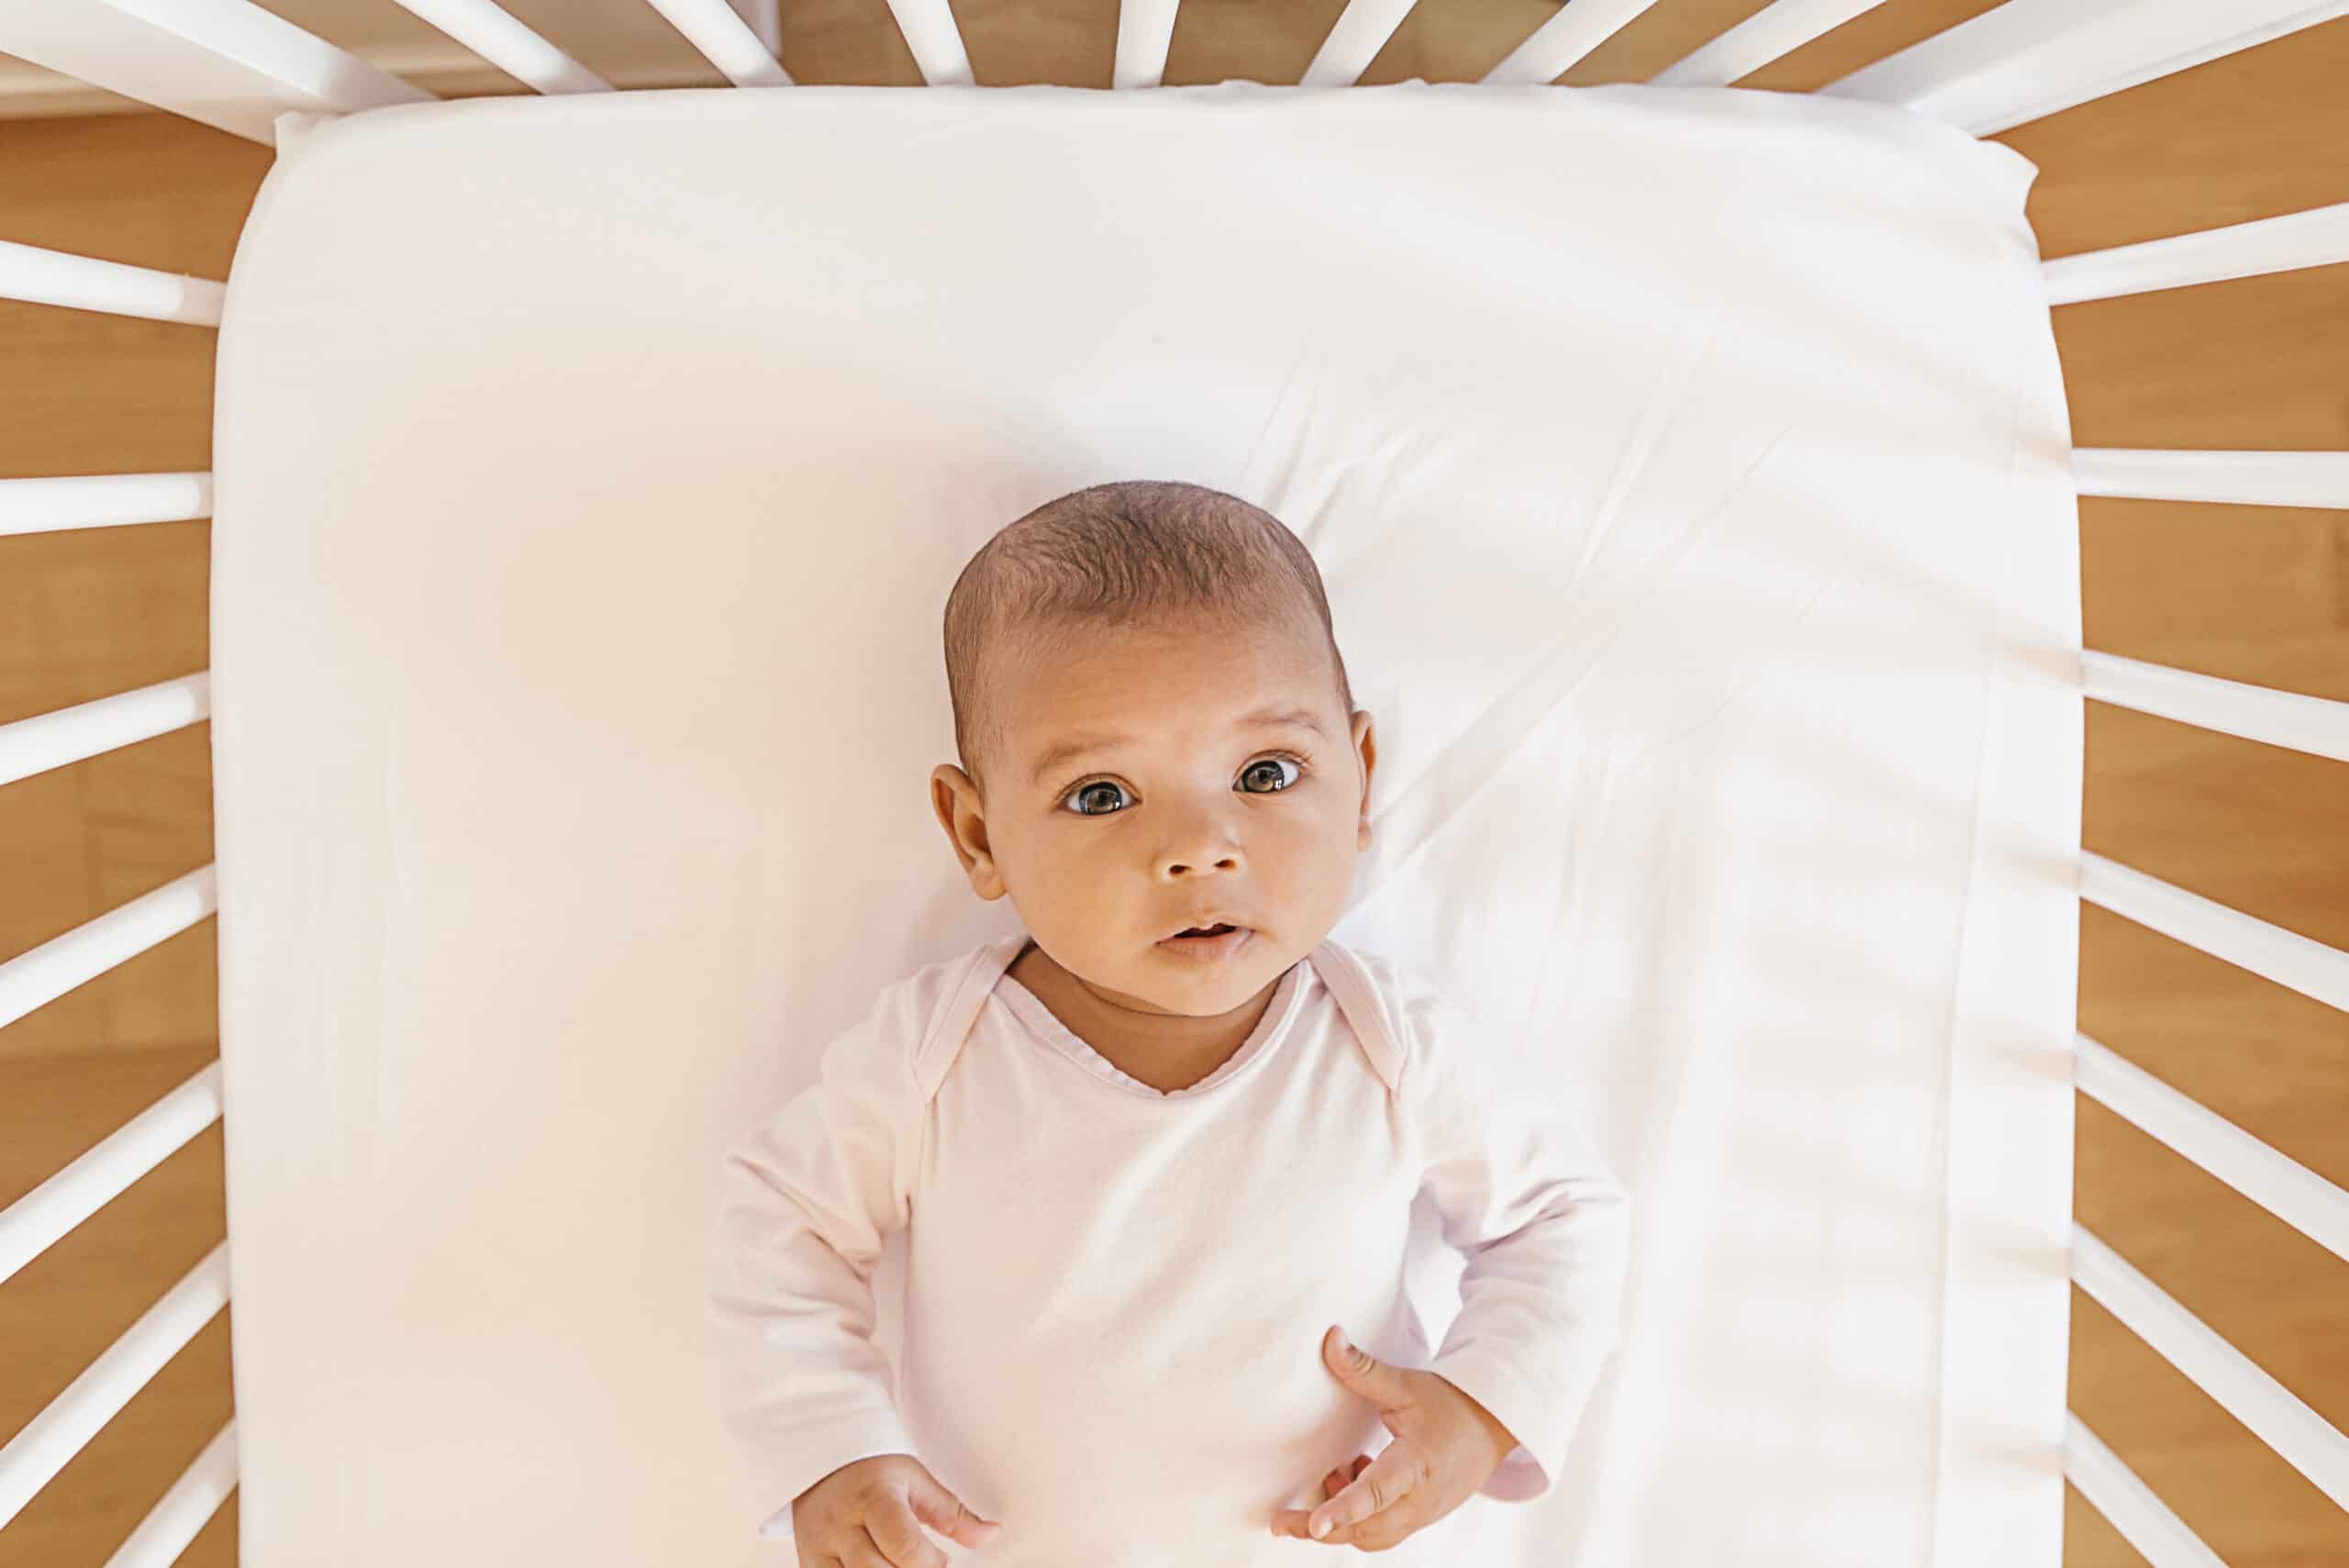 safe sleep: Sudden Infant Death Syndrome